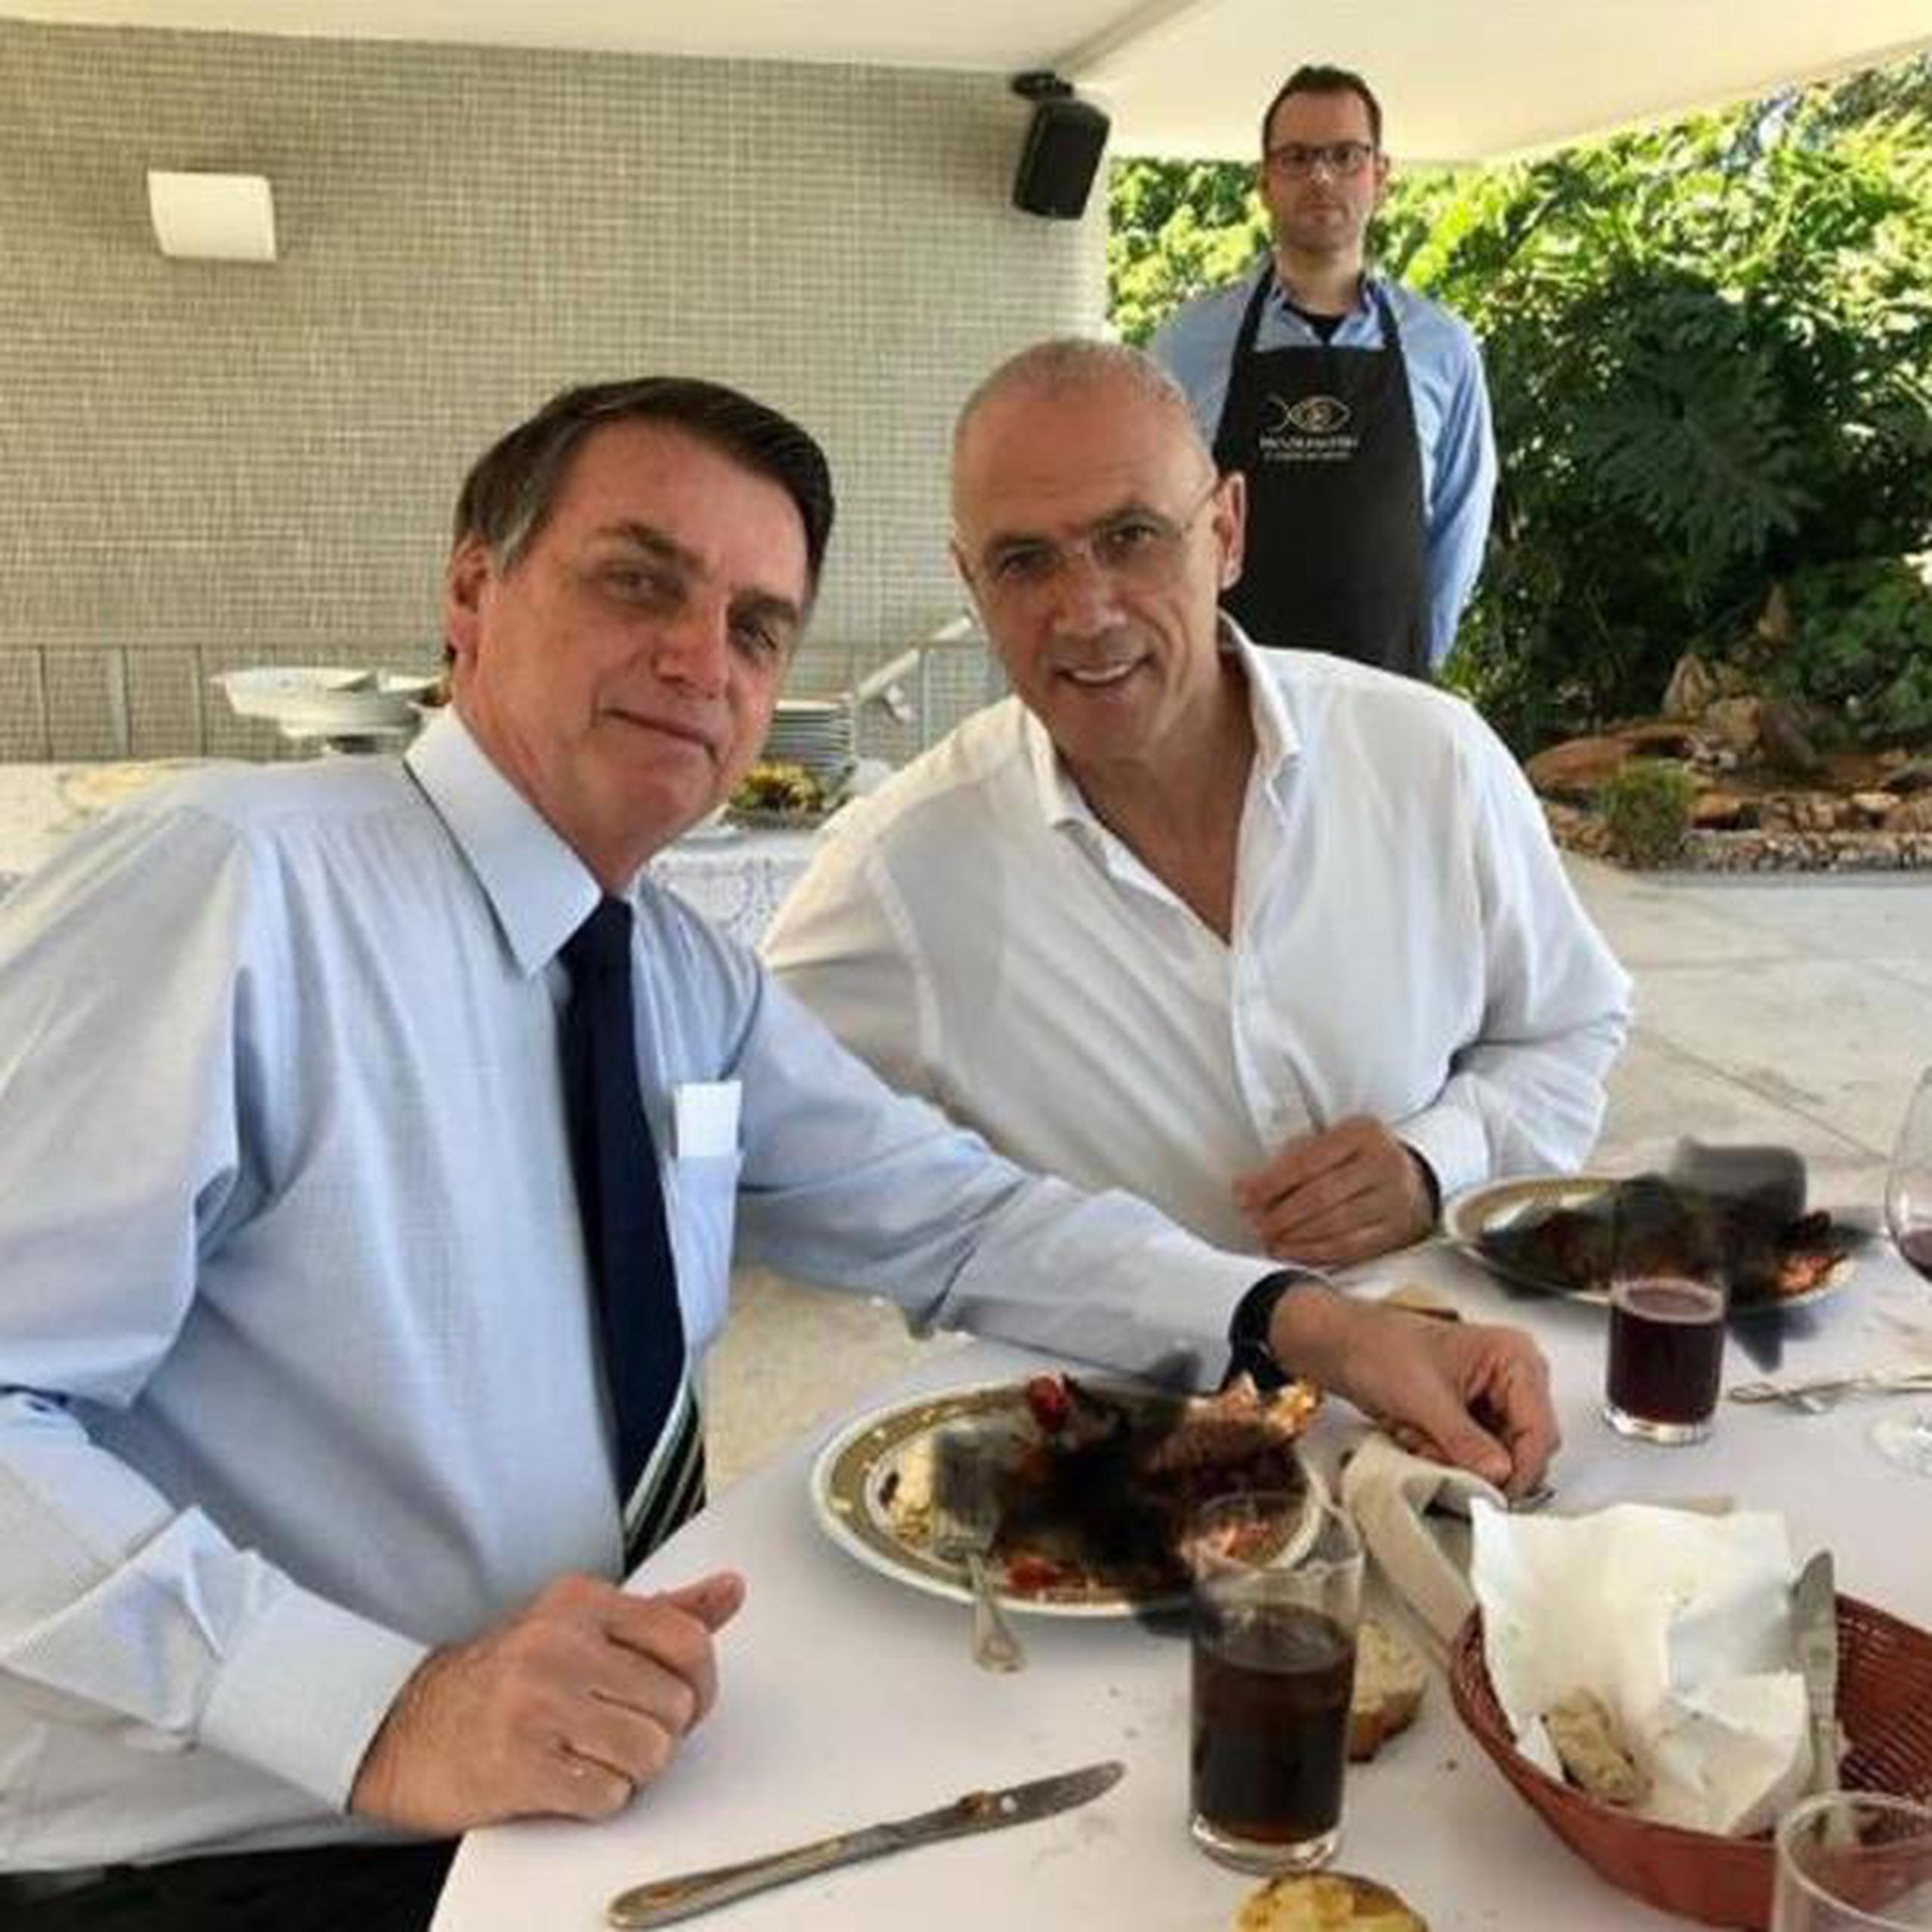 El diplomático israelí Yossi Sheli estaba comiendo con el presidente brasileño, Yair Bolsonaro. (EFE)